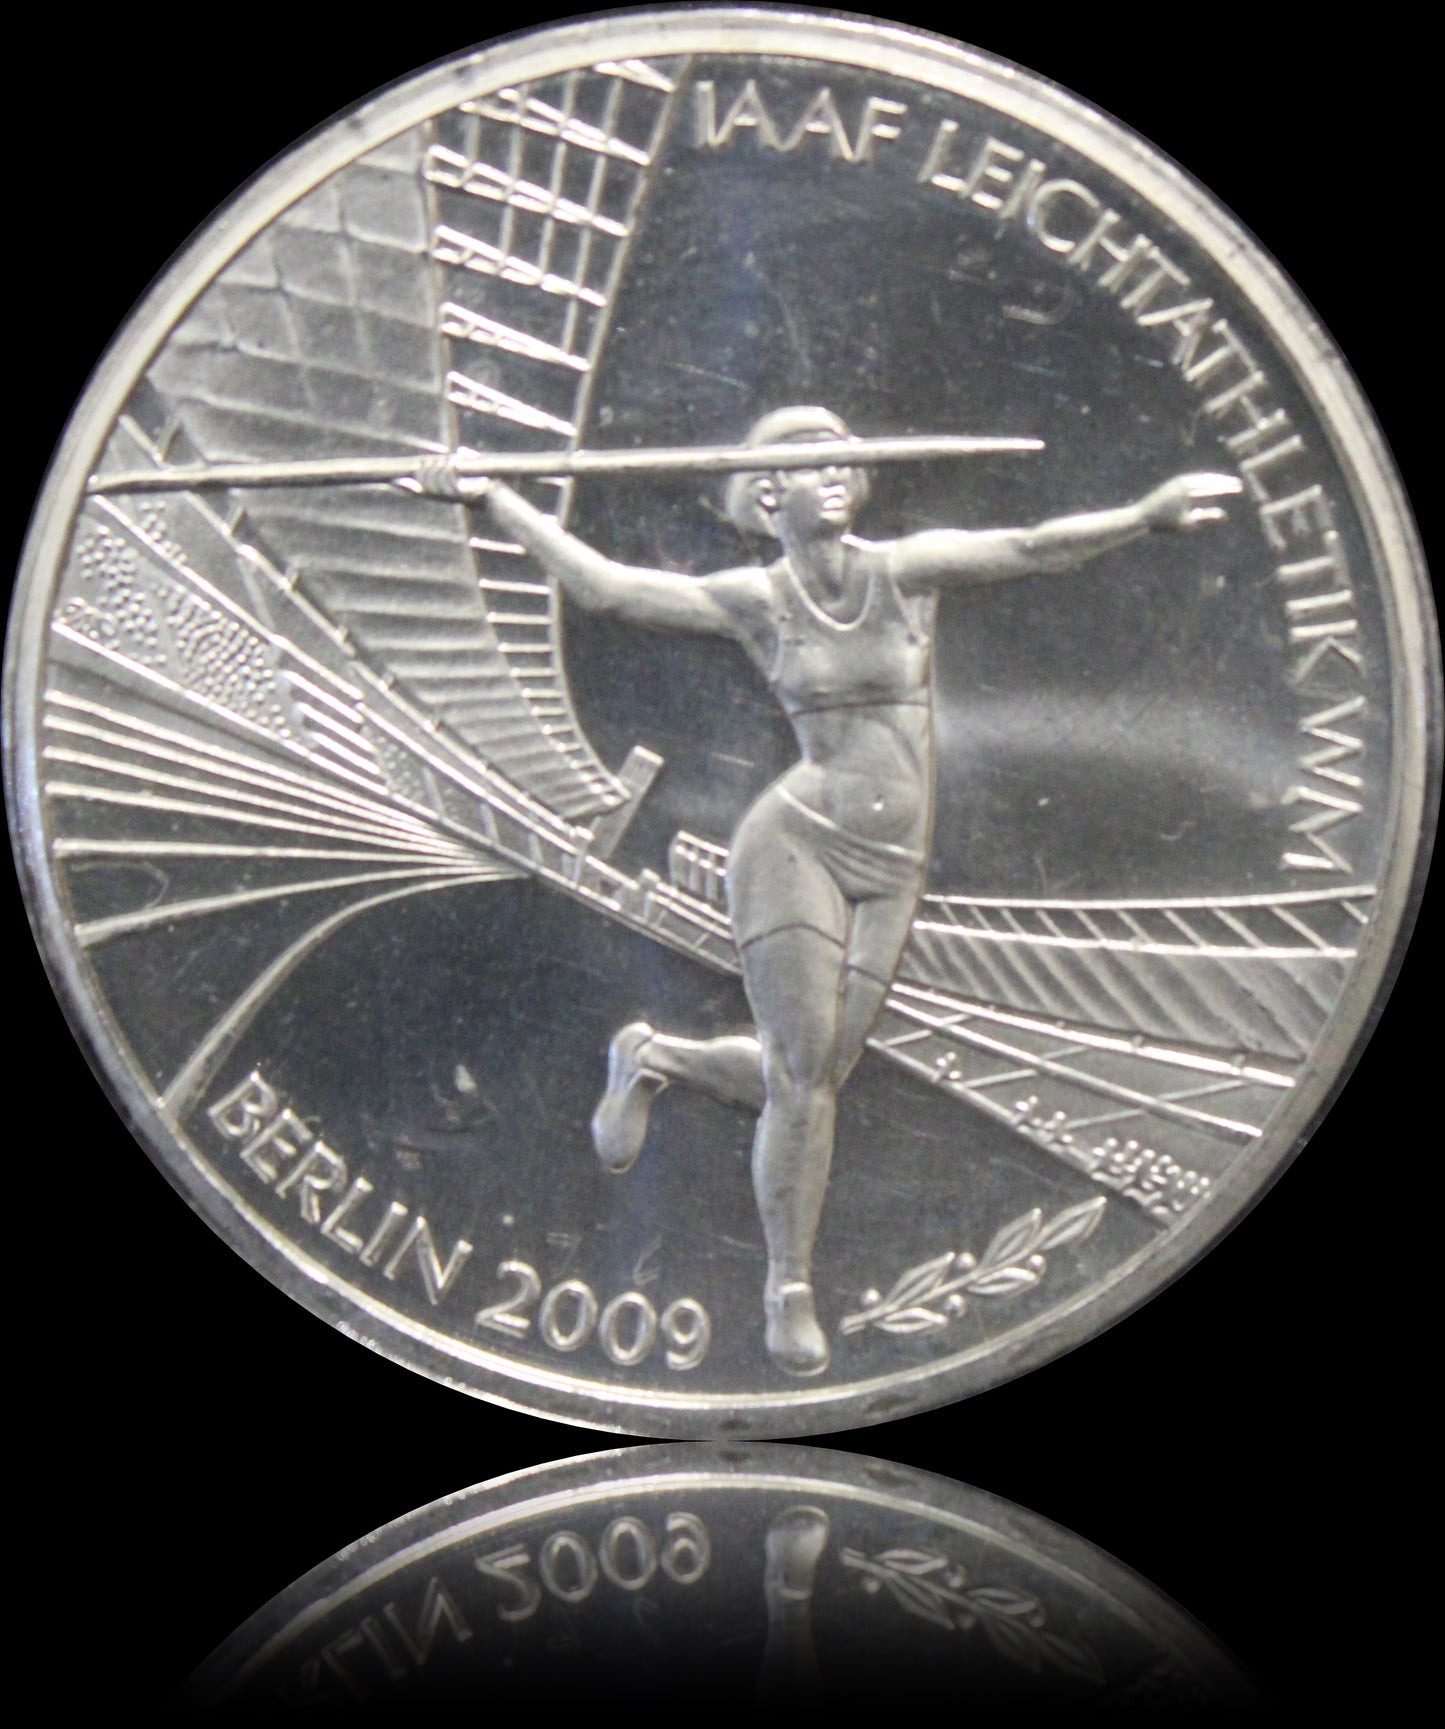 FIS ALPINE SKI WM 2011 GARMISCH-PARTENKIRCHEN, Serie 10 € Silber Gedenkmünzen Deutschland, Stempelglanz, 2010